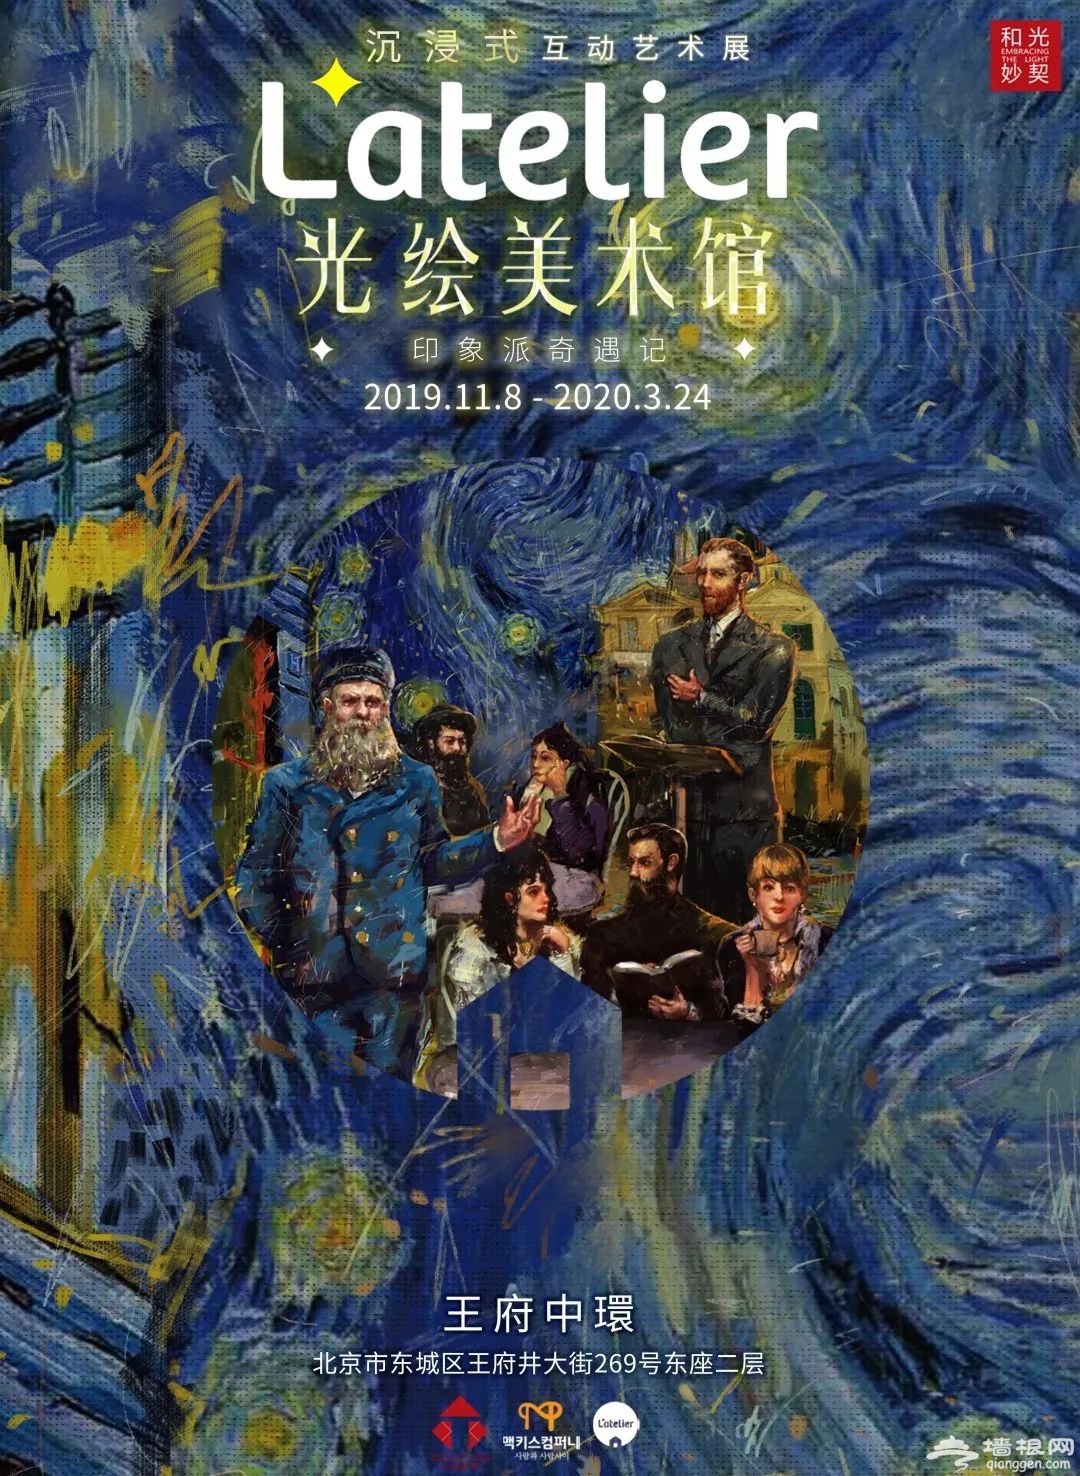 2019-2020北京光绘美术馆沉浸式艺术展时间地点、门票价格、展出详情[墙根网]